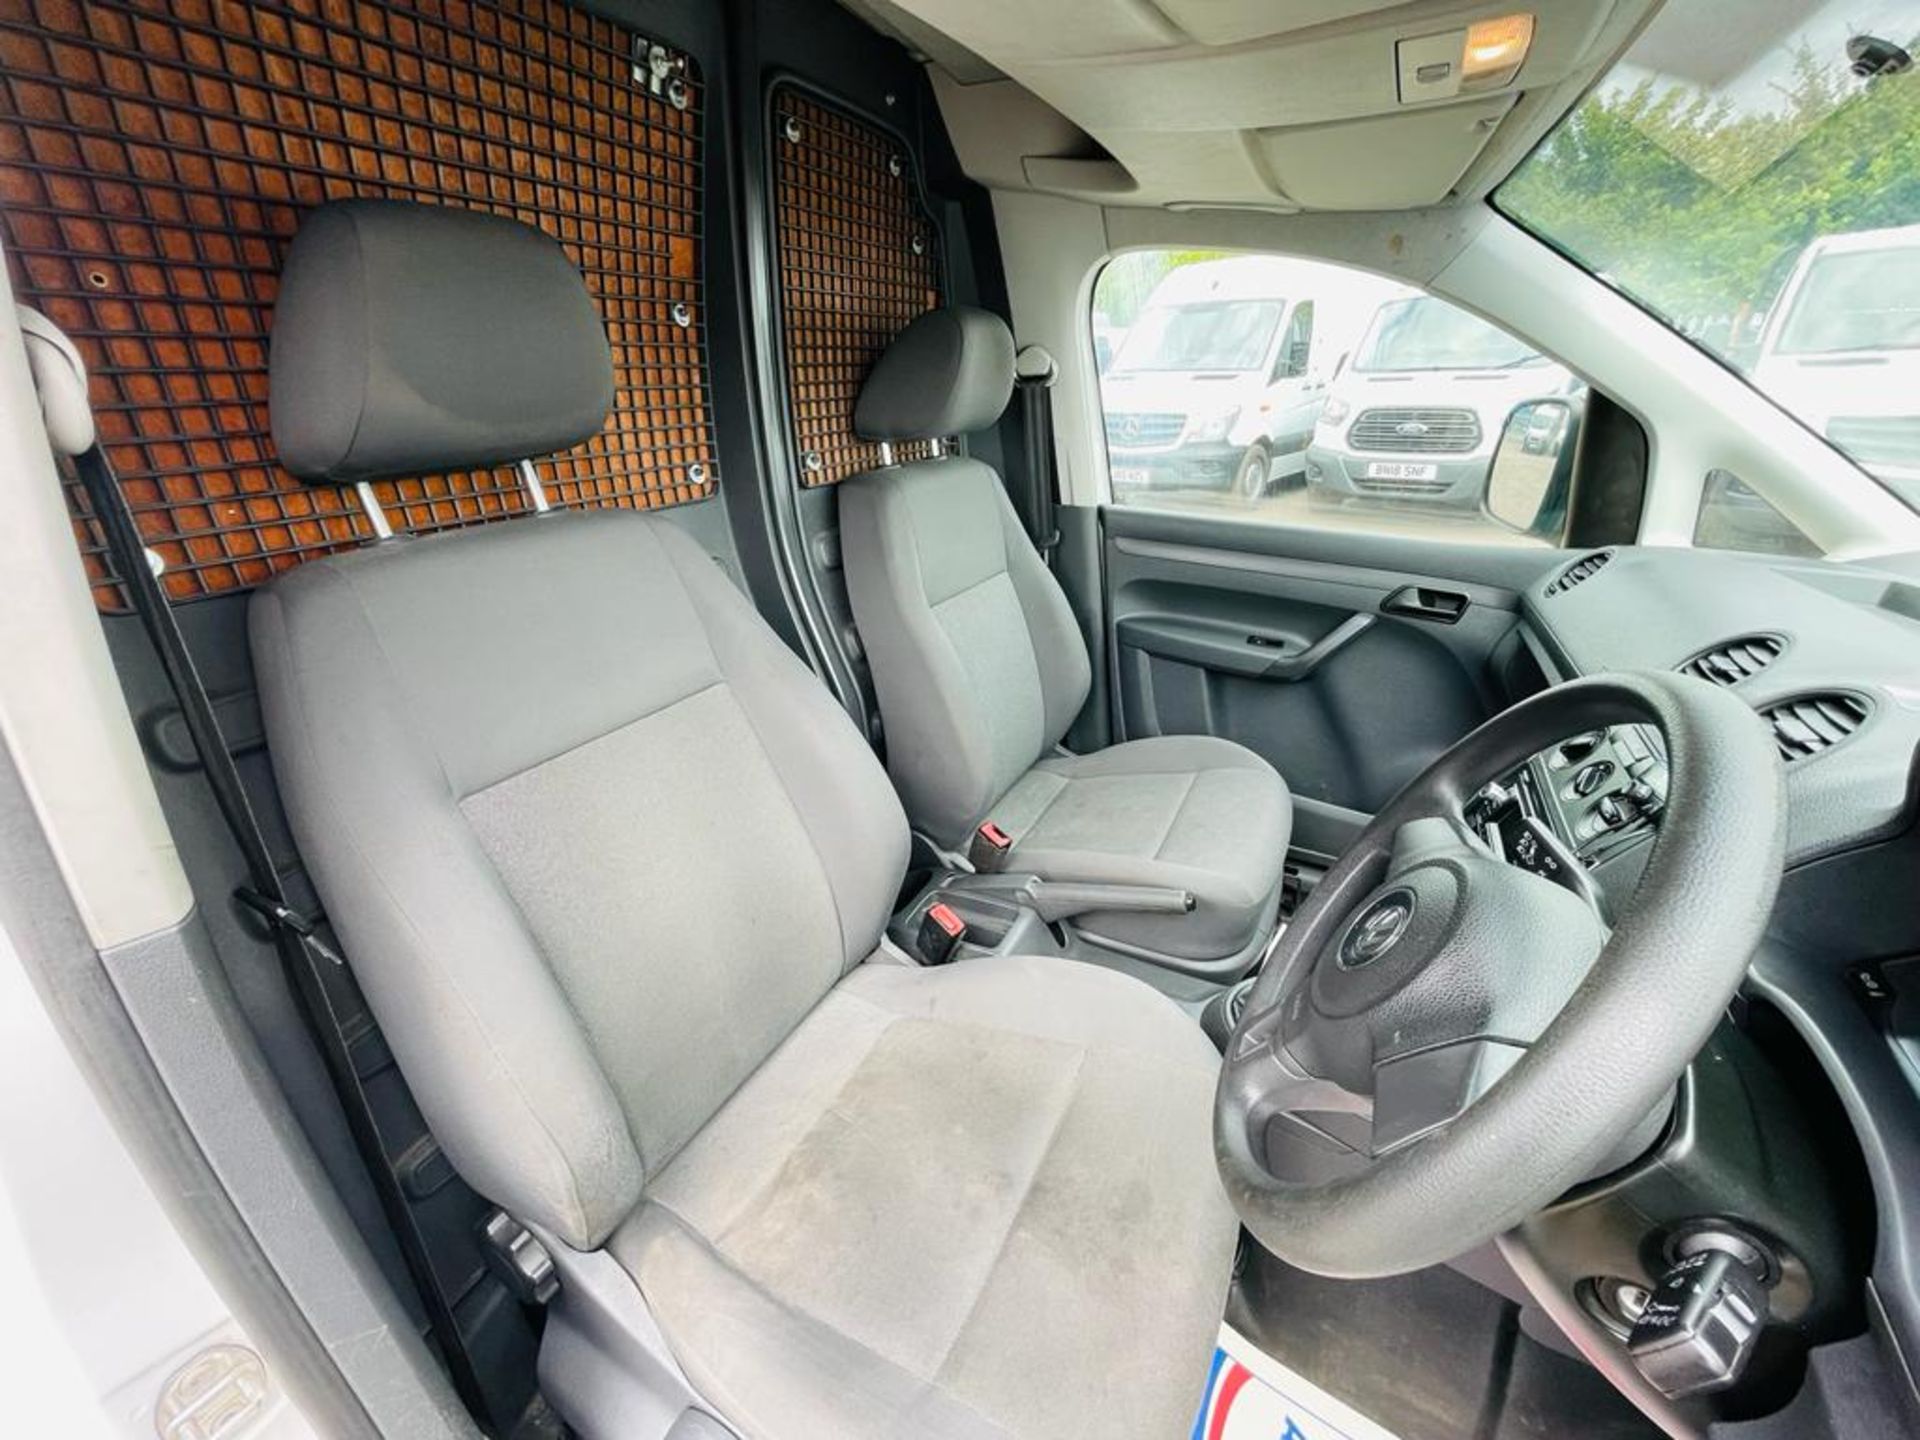 ** ON SALE ** Volkswagen Caddy C20 1.6 TDI StartLine 102 2015 '15 Reg' Panel Van - Very Economical - Image 18 of 27